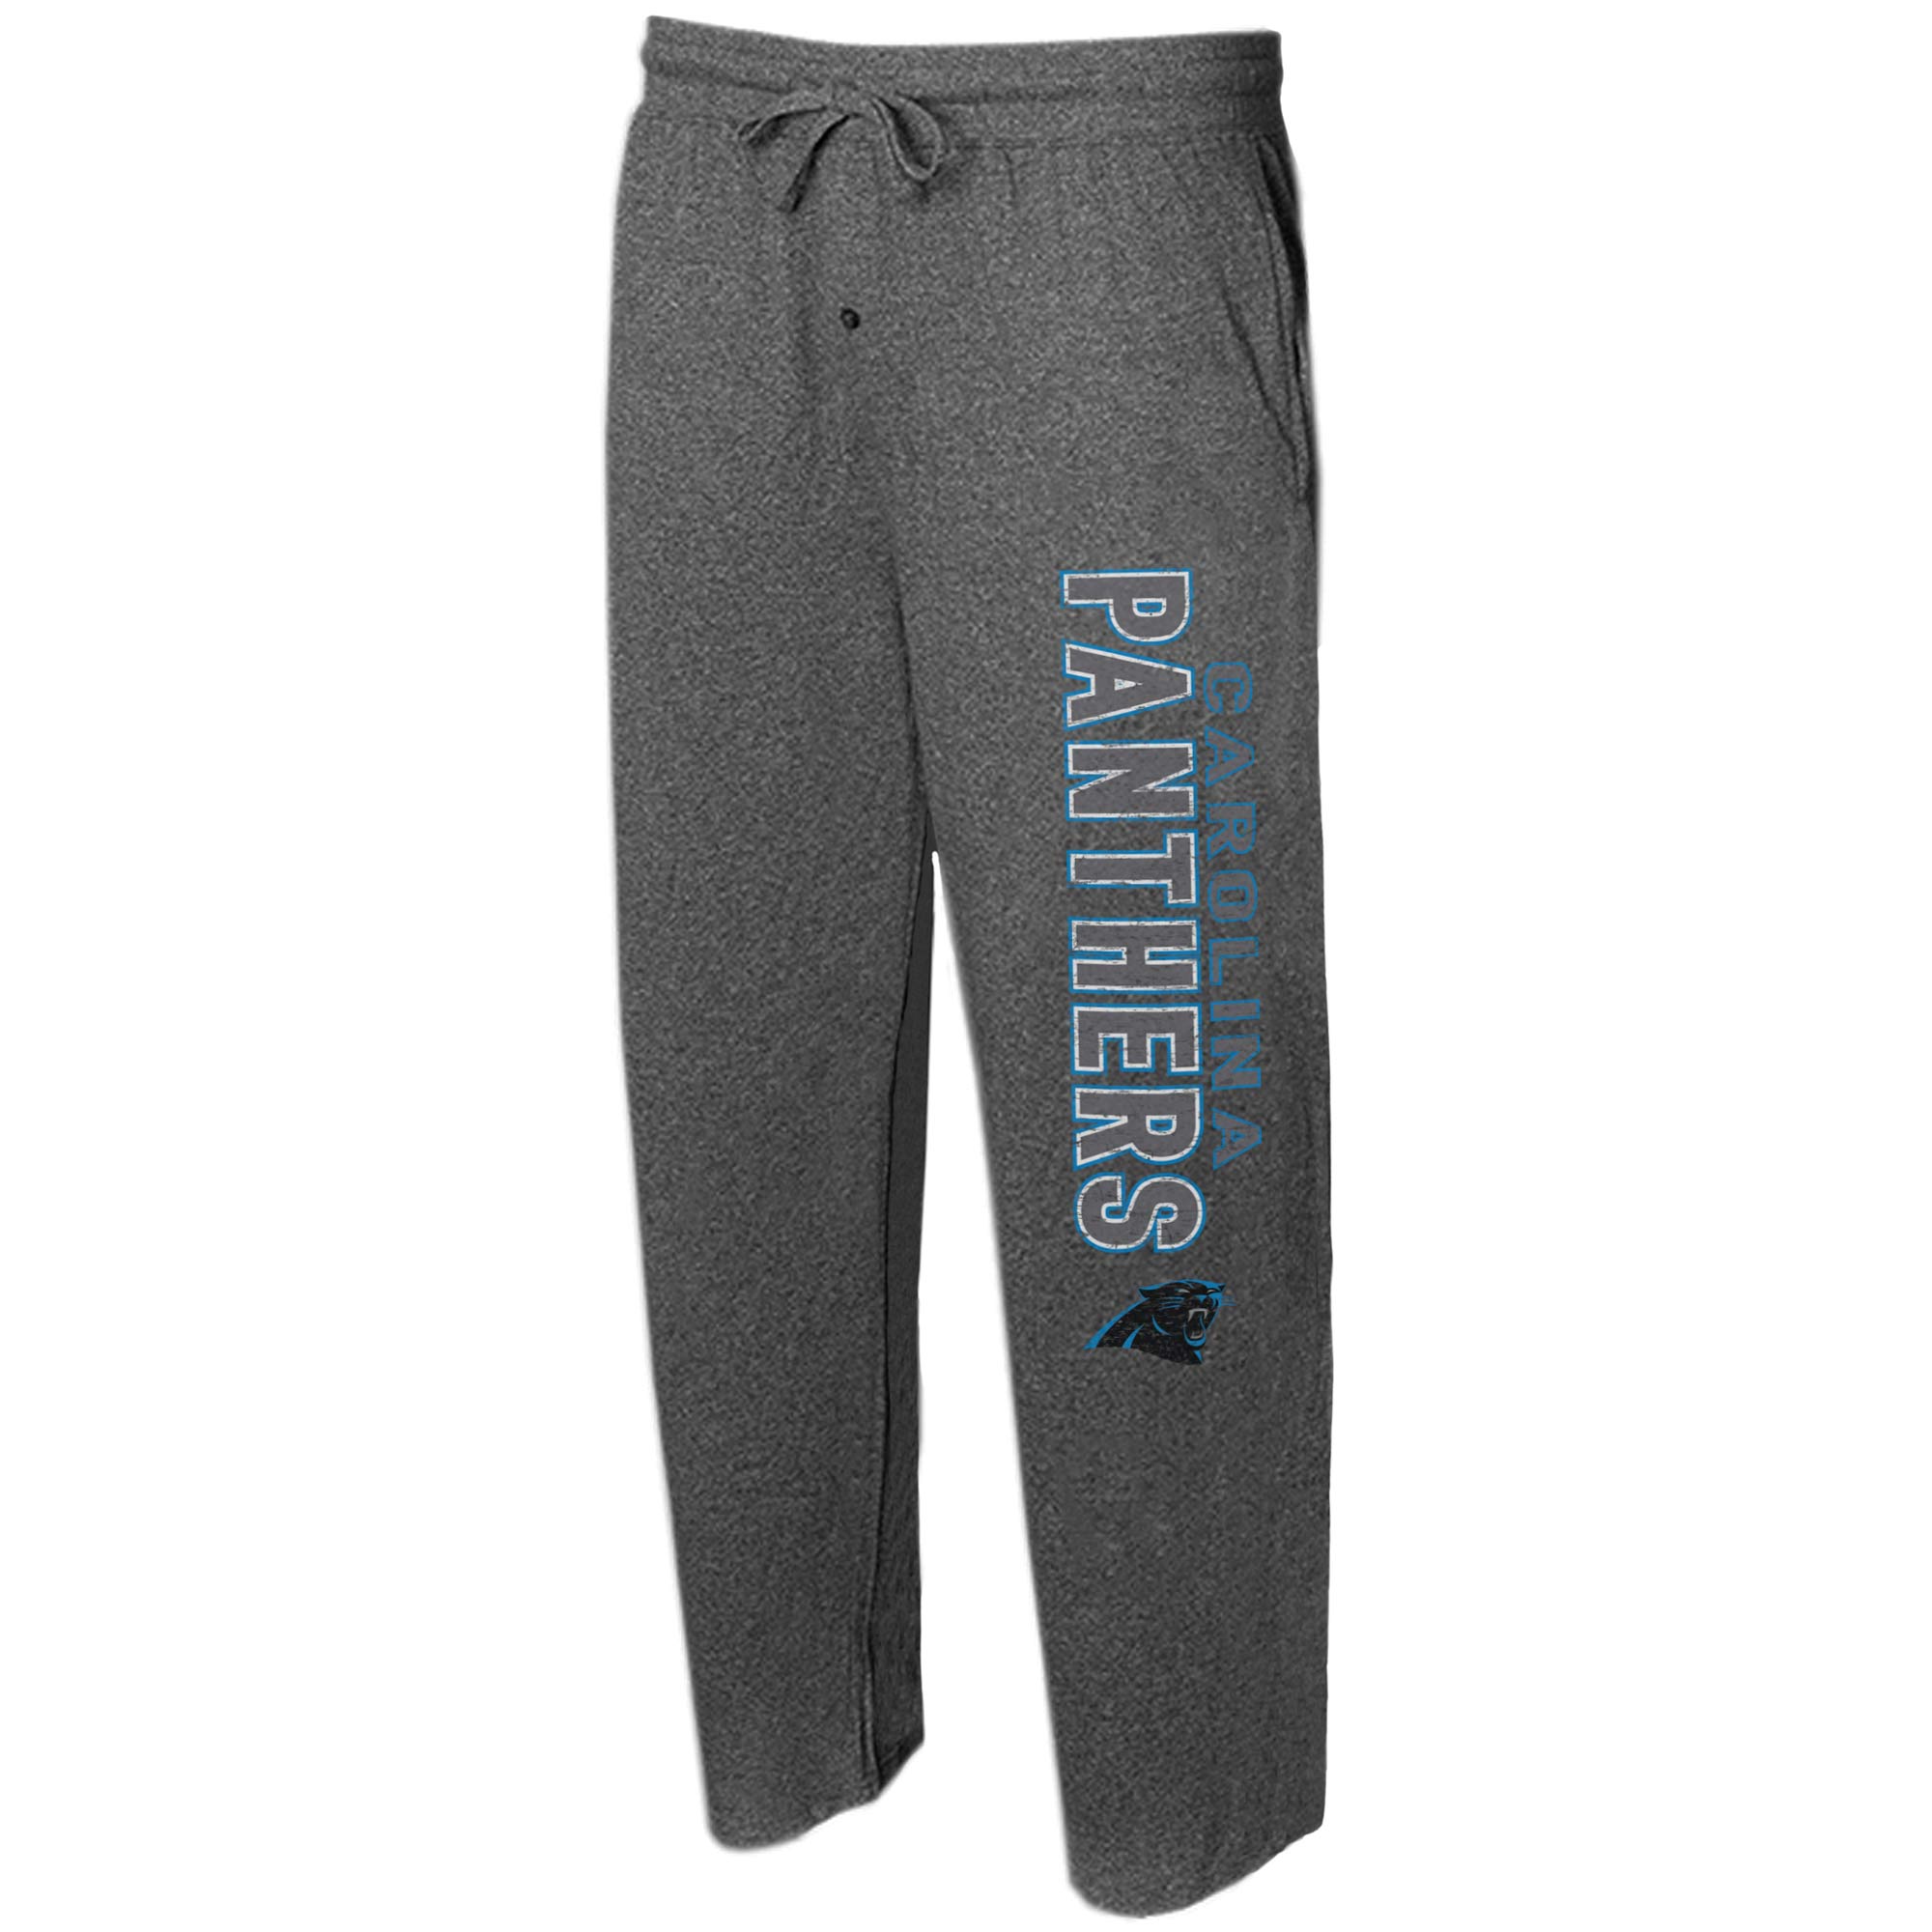 Concepts Sport Panthers Quest Knit Lounge Pants - Men's